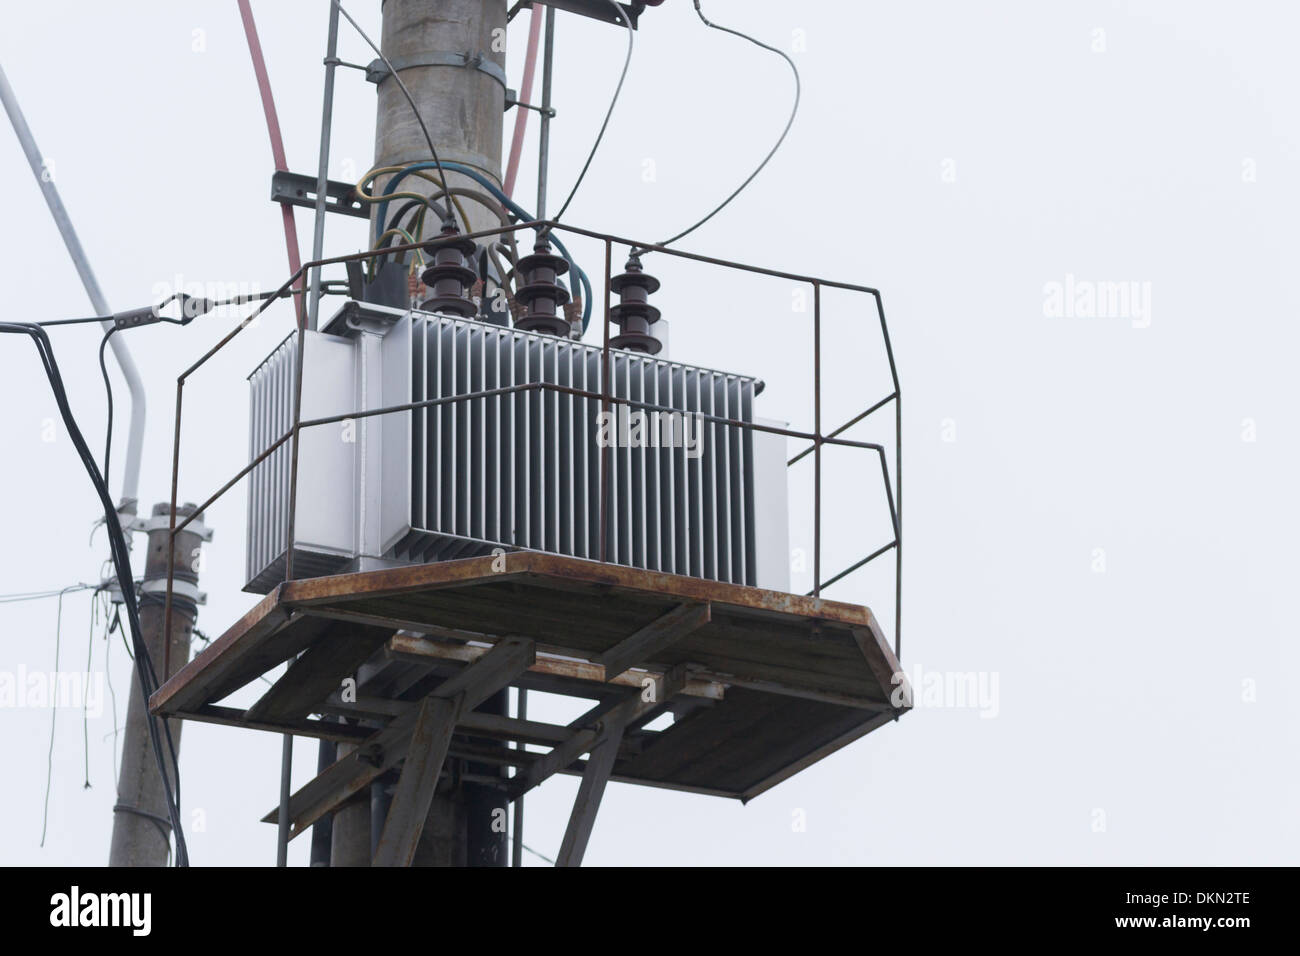 Transformateur d'alimentation électrique sur un pylône d'électricité en hiver Banque D'Images